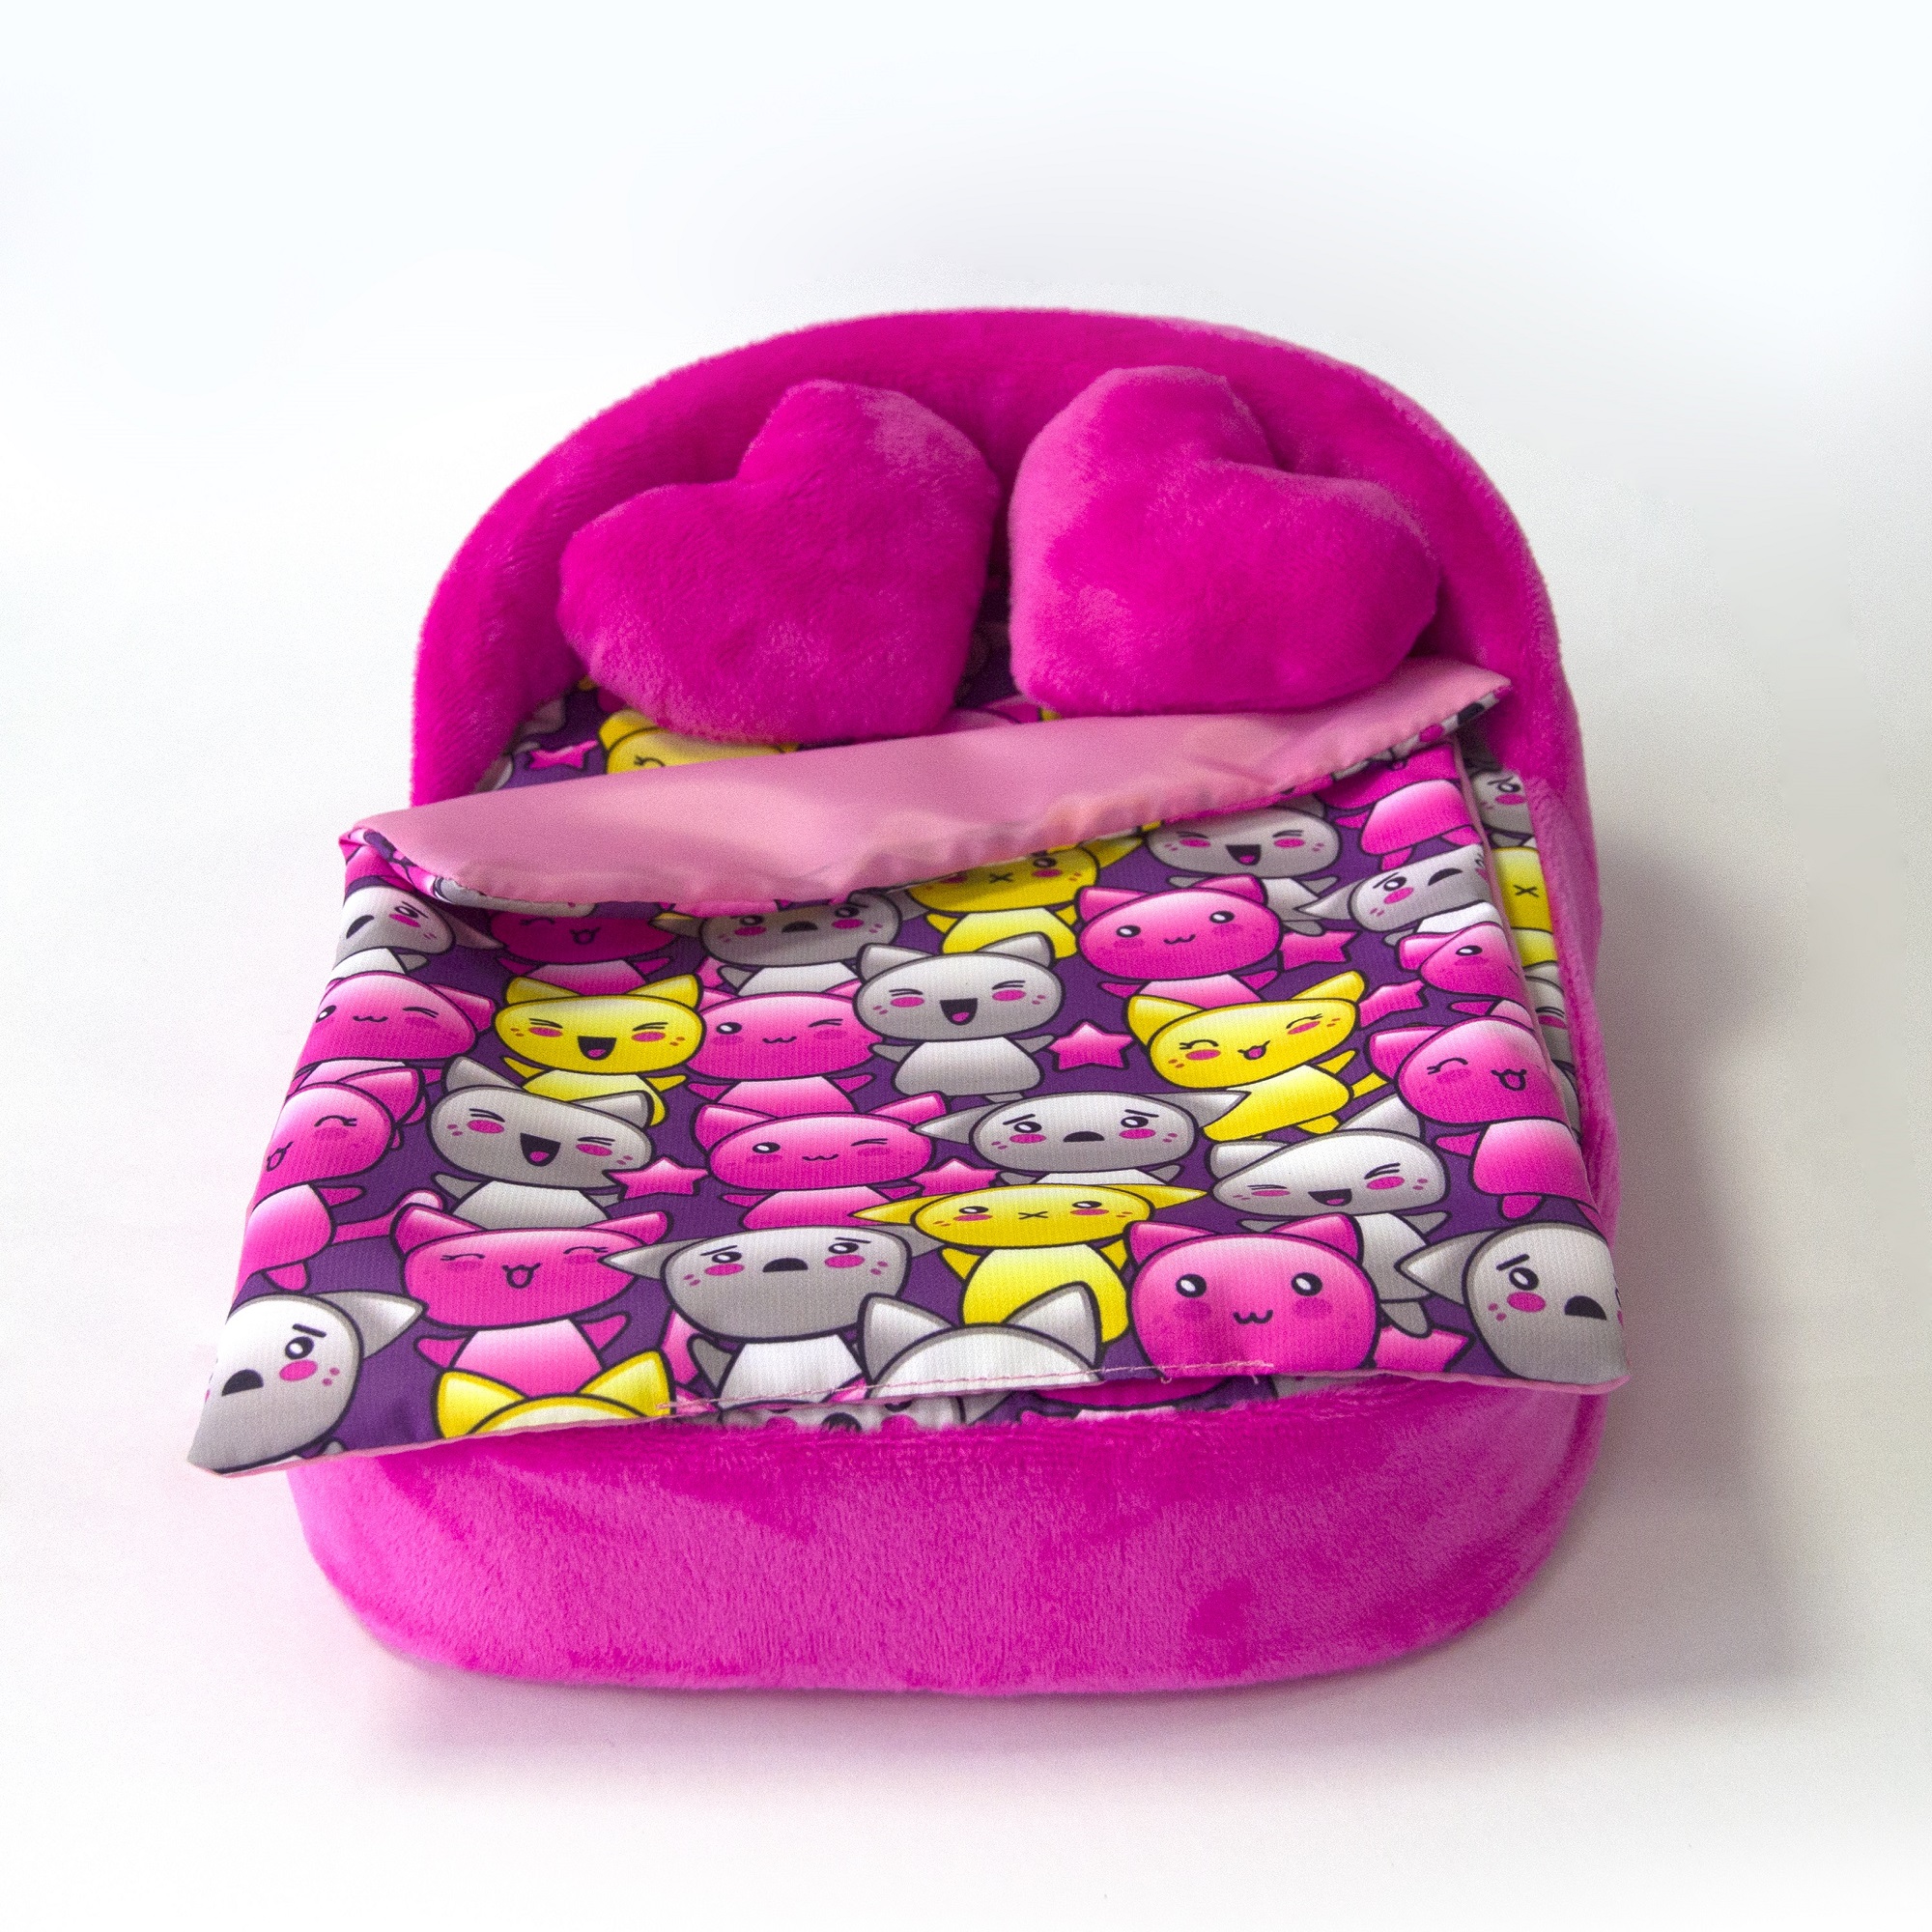 Набор мебели для кукол Belon familia Принт хор котят фиолетовый кровать с круглой спинкой 2 подушки НМ-003/4-33 - фото 4